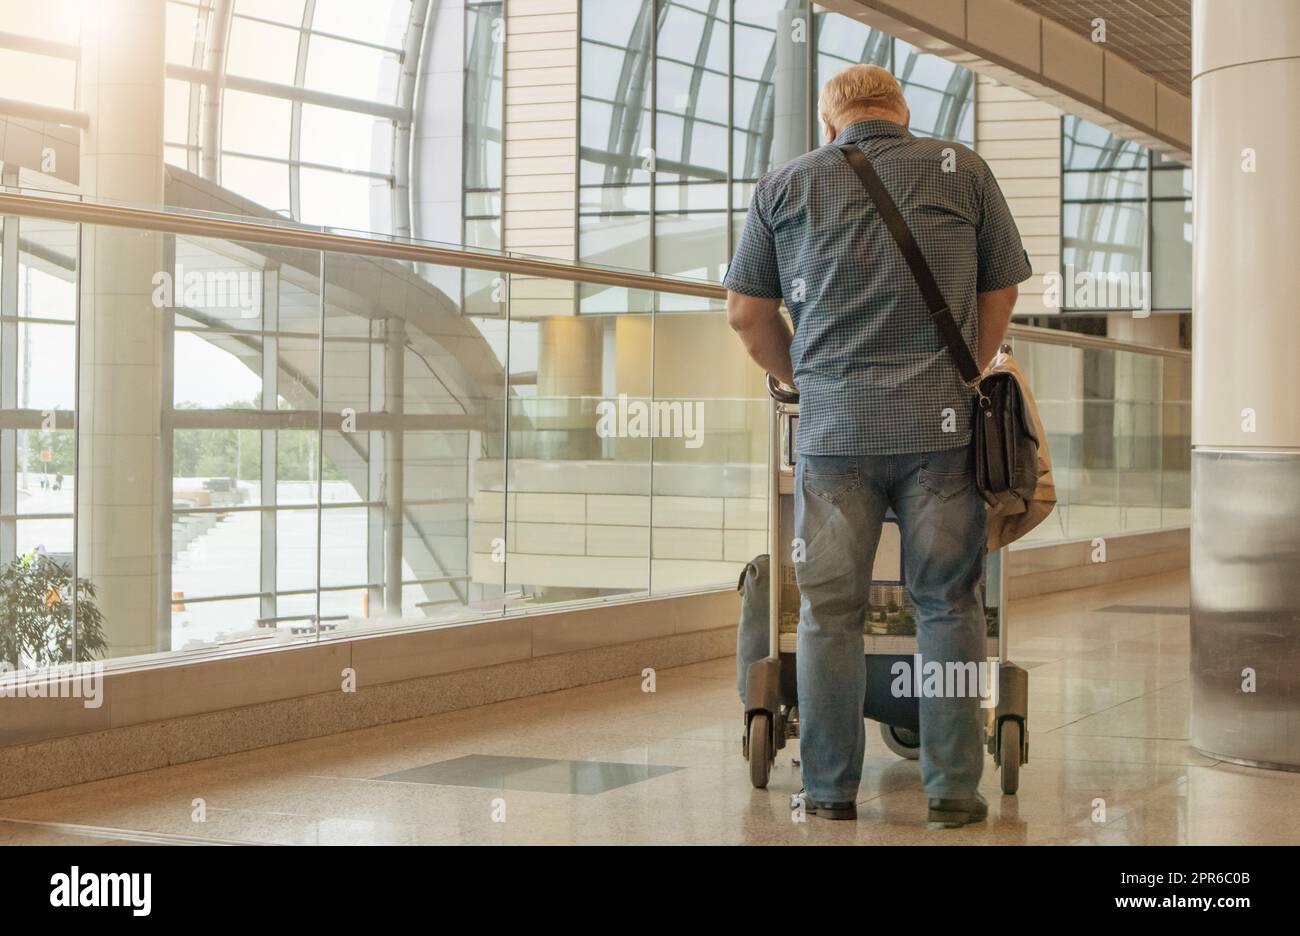 Una figura de cuerpo entero de un hombre en jeans azules y una camisa, con un carrito de equipaje, en el fondo del interior del aeropuerto, una copia del espacio a la izquierda Foto de stock